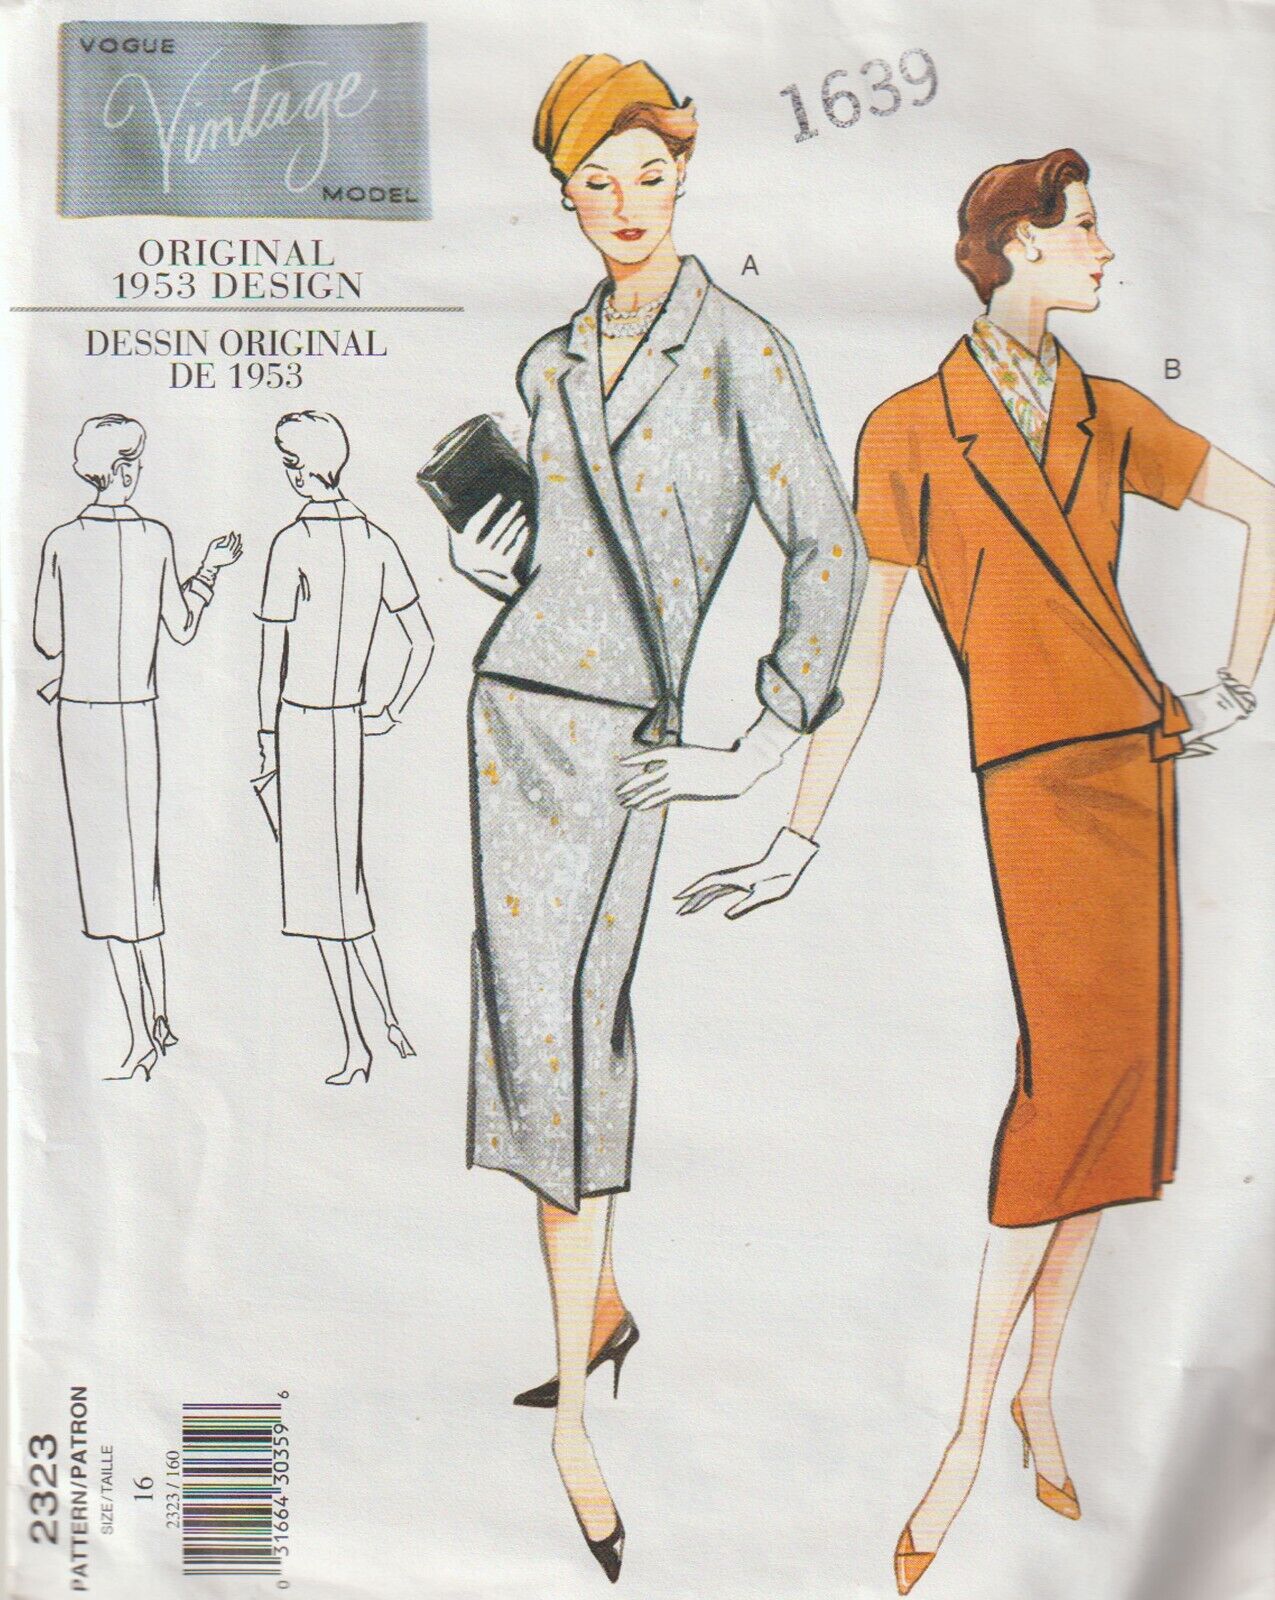 Vogue\'s Vintage Model Pattern c1999 Misses Top & Skirt, Size 16, FF